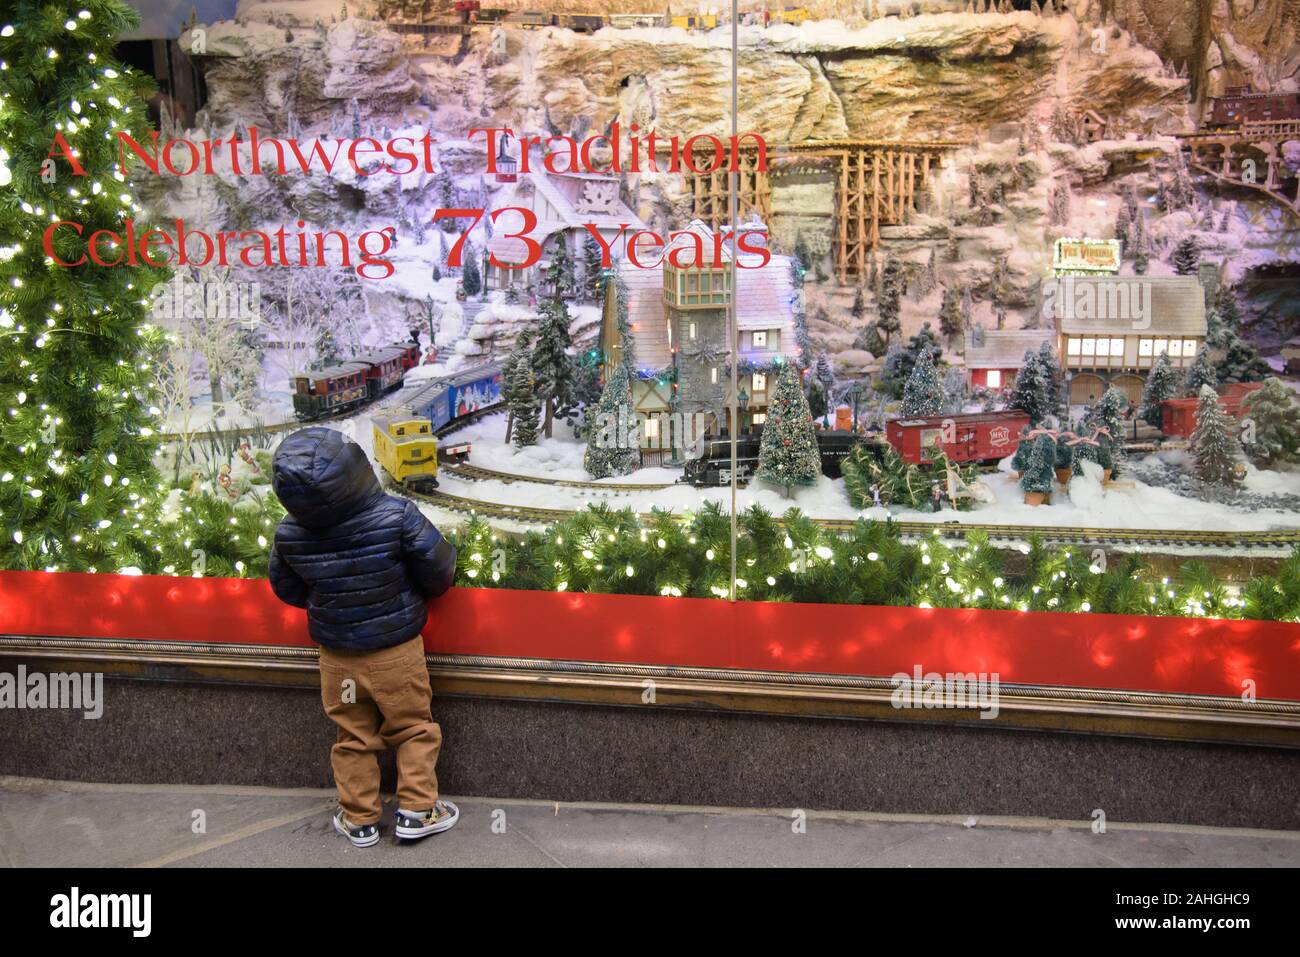 Kind blickt im Wunder bei Macy's final Store Fenster Display für Weihnachten in der Innenstadt von Seattle eingerichtet. Macy's ist geschlossen und beendet eine 73-jährige Tradition. Stockfoto